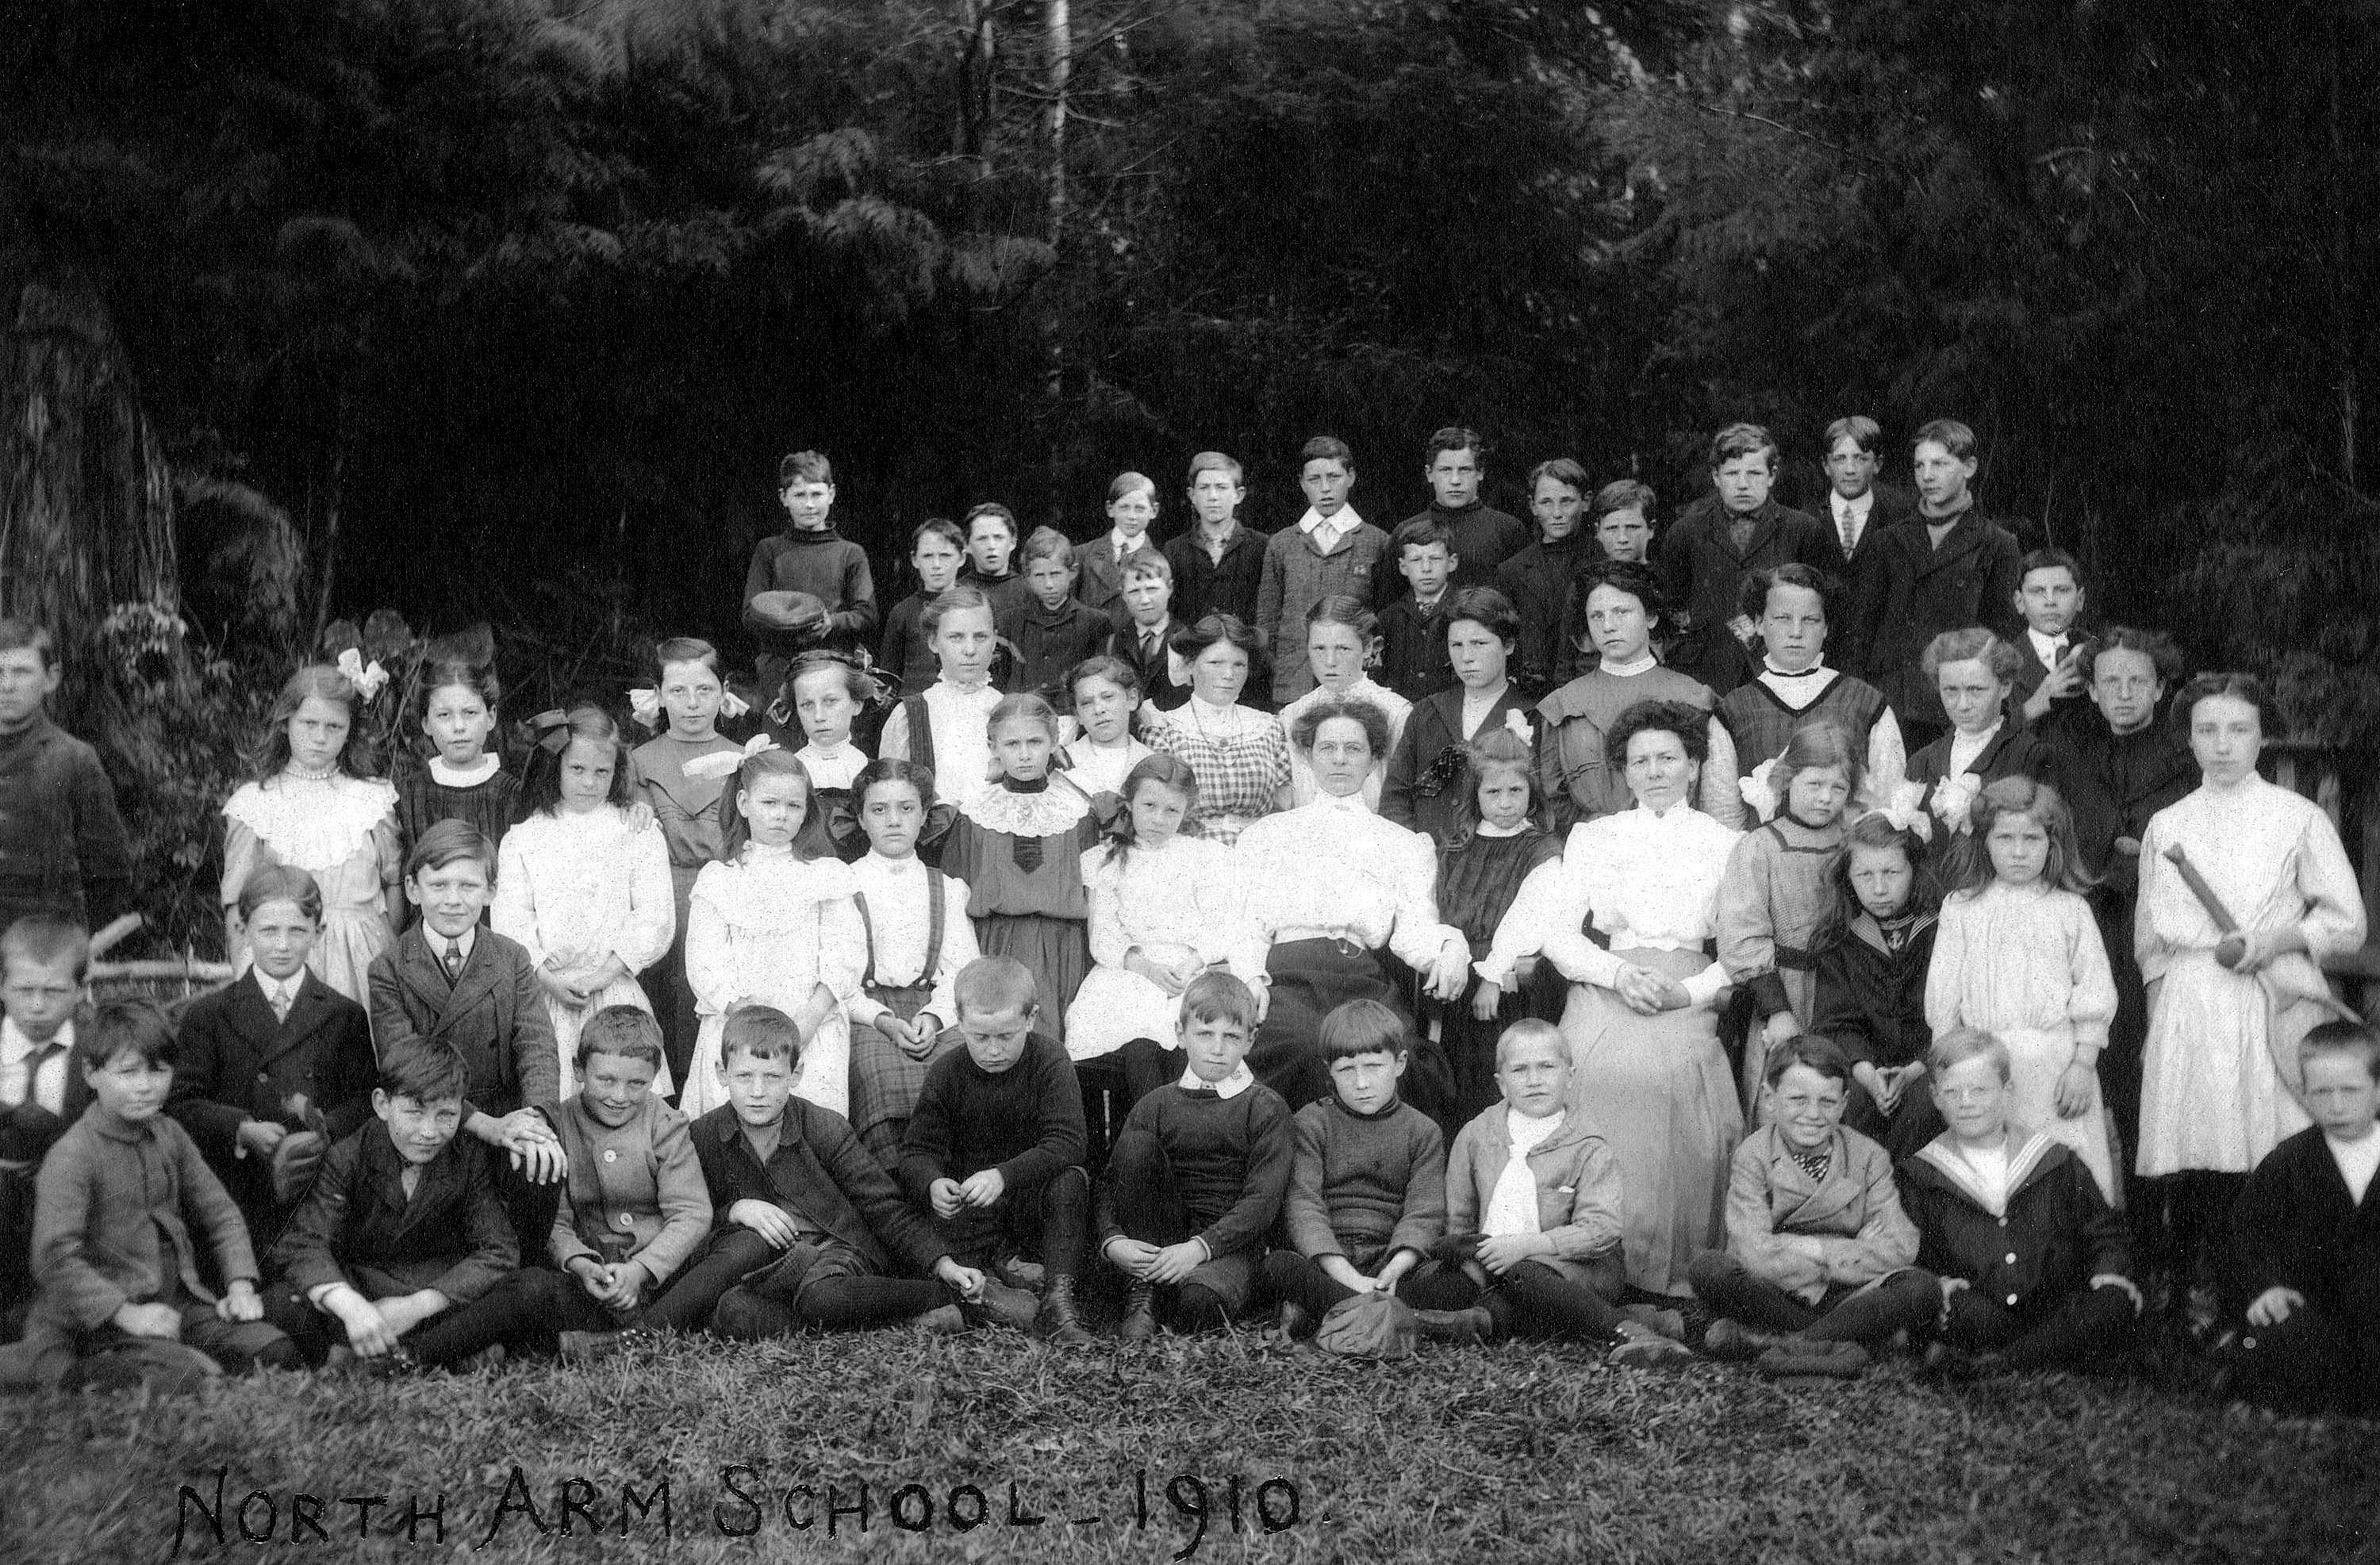 north-arm-school-1910